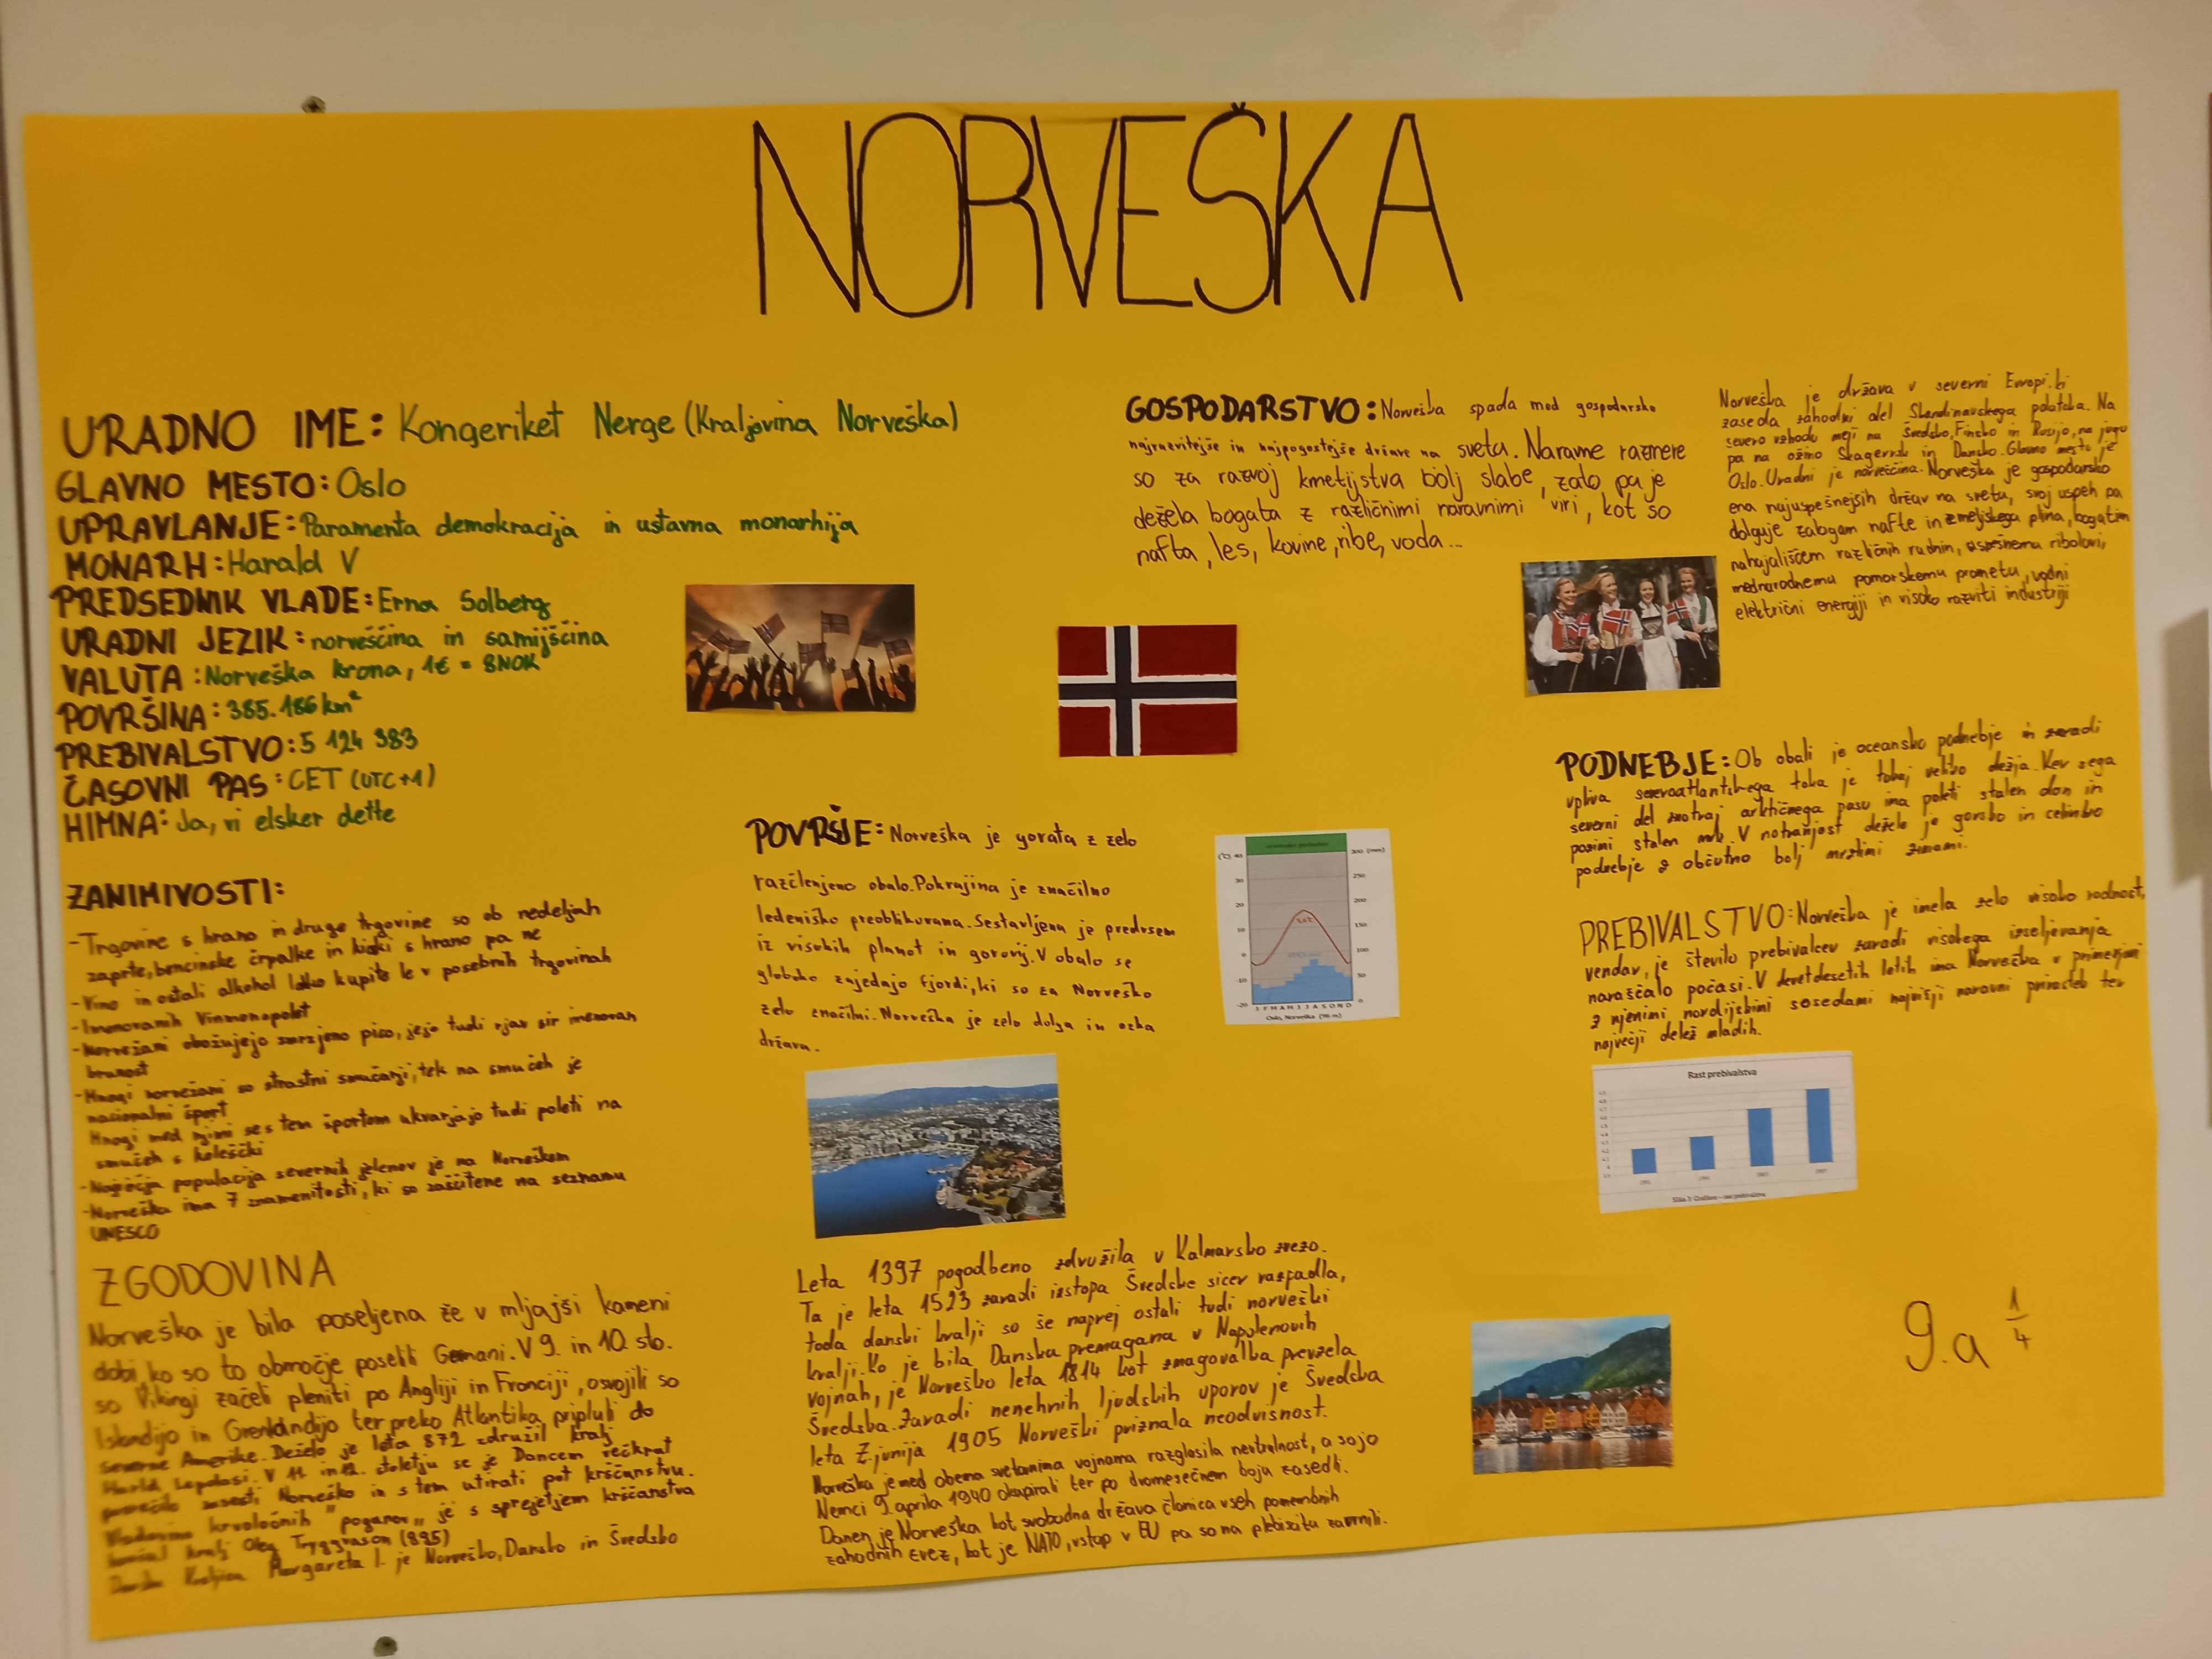 norveska_9-a